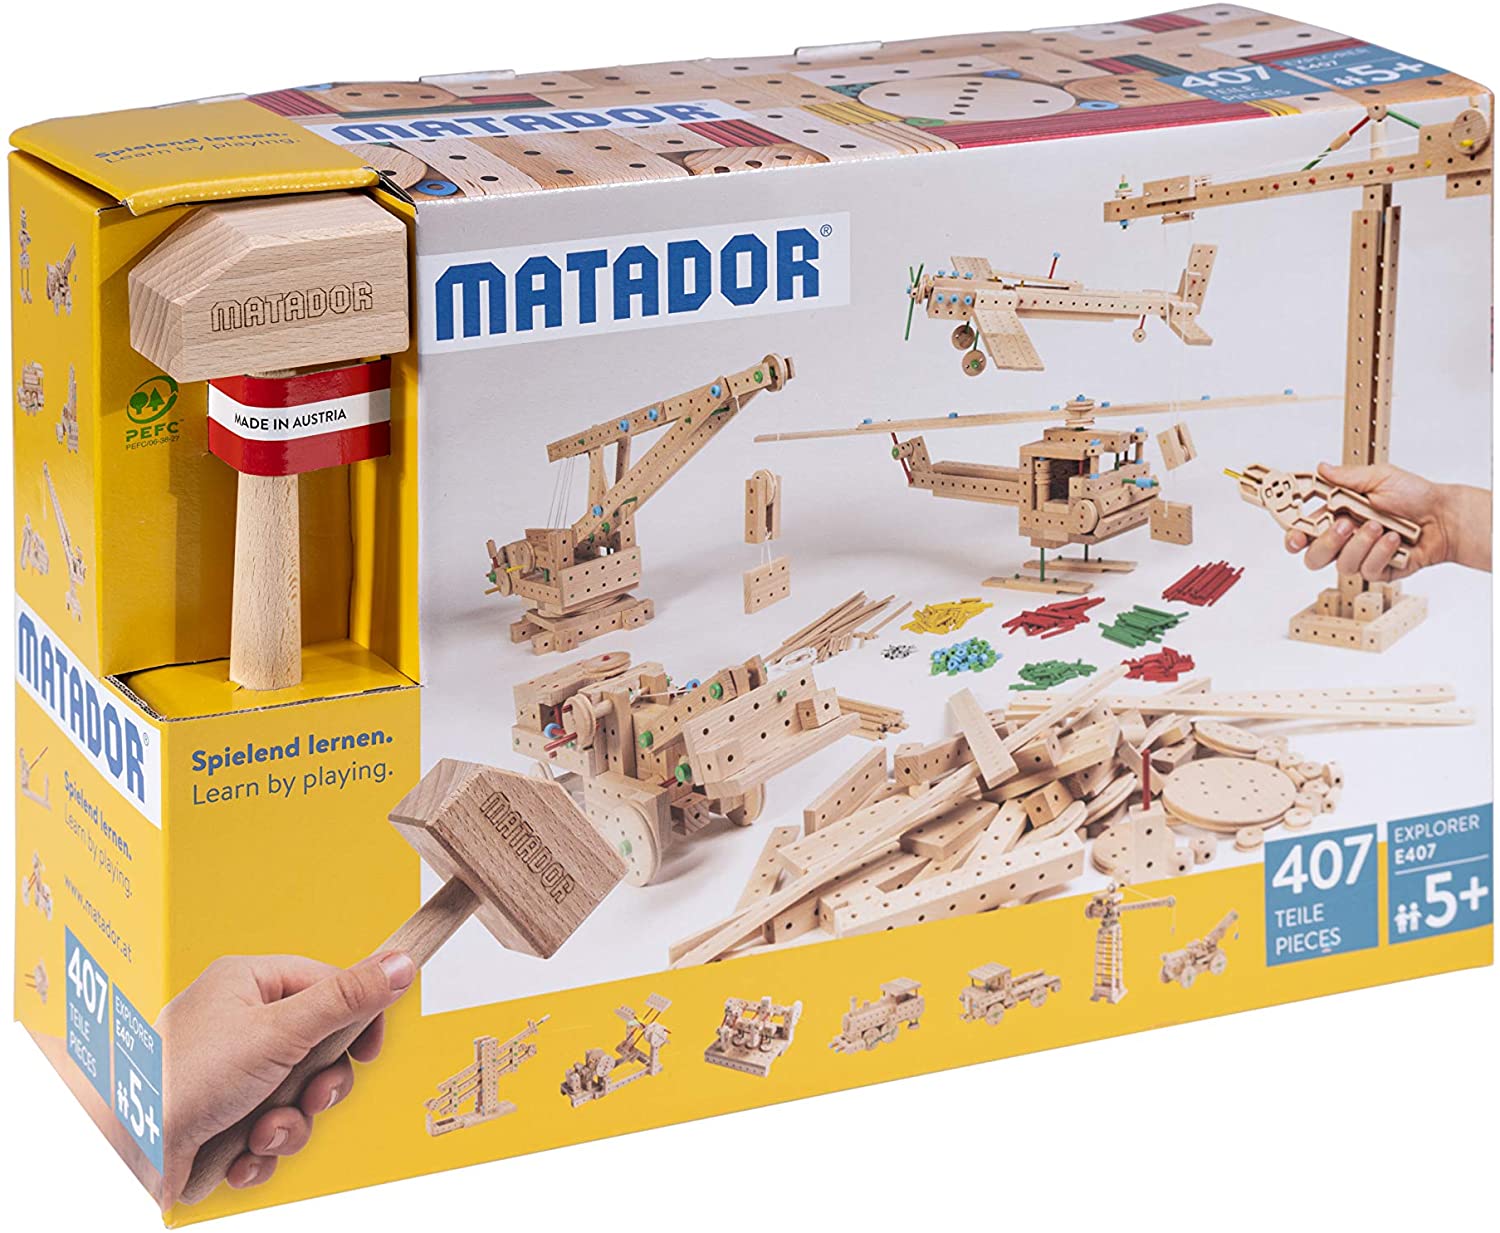 Matador E407 Building Kit